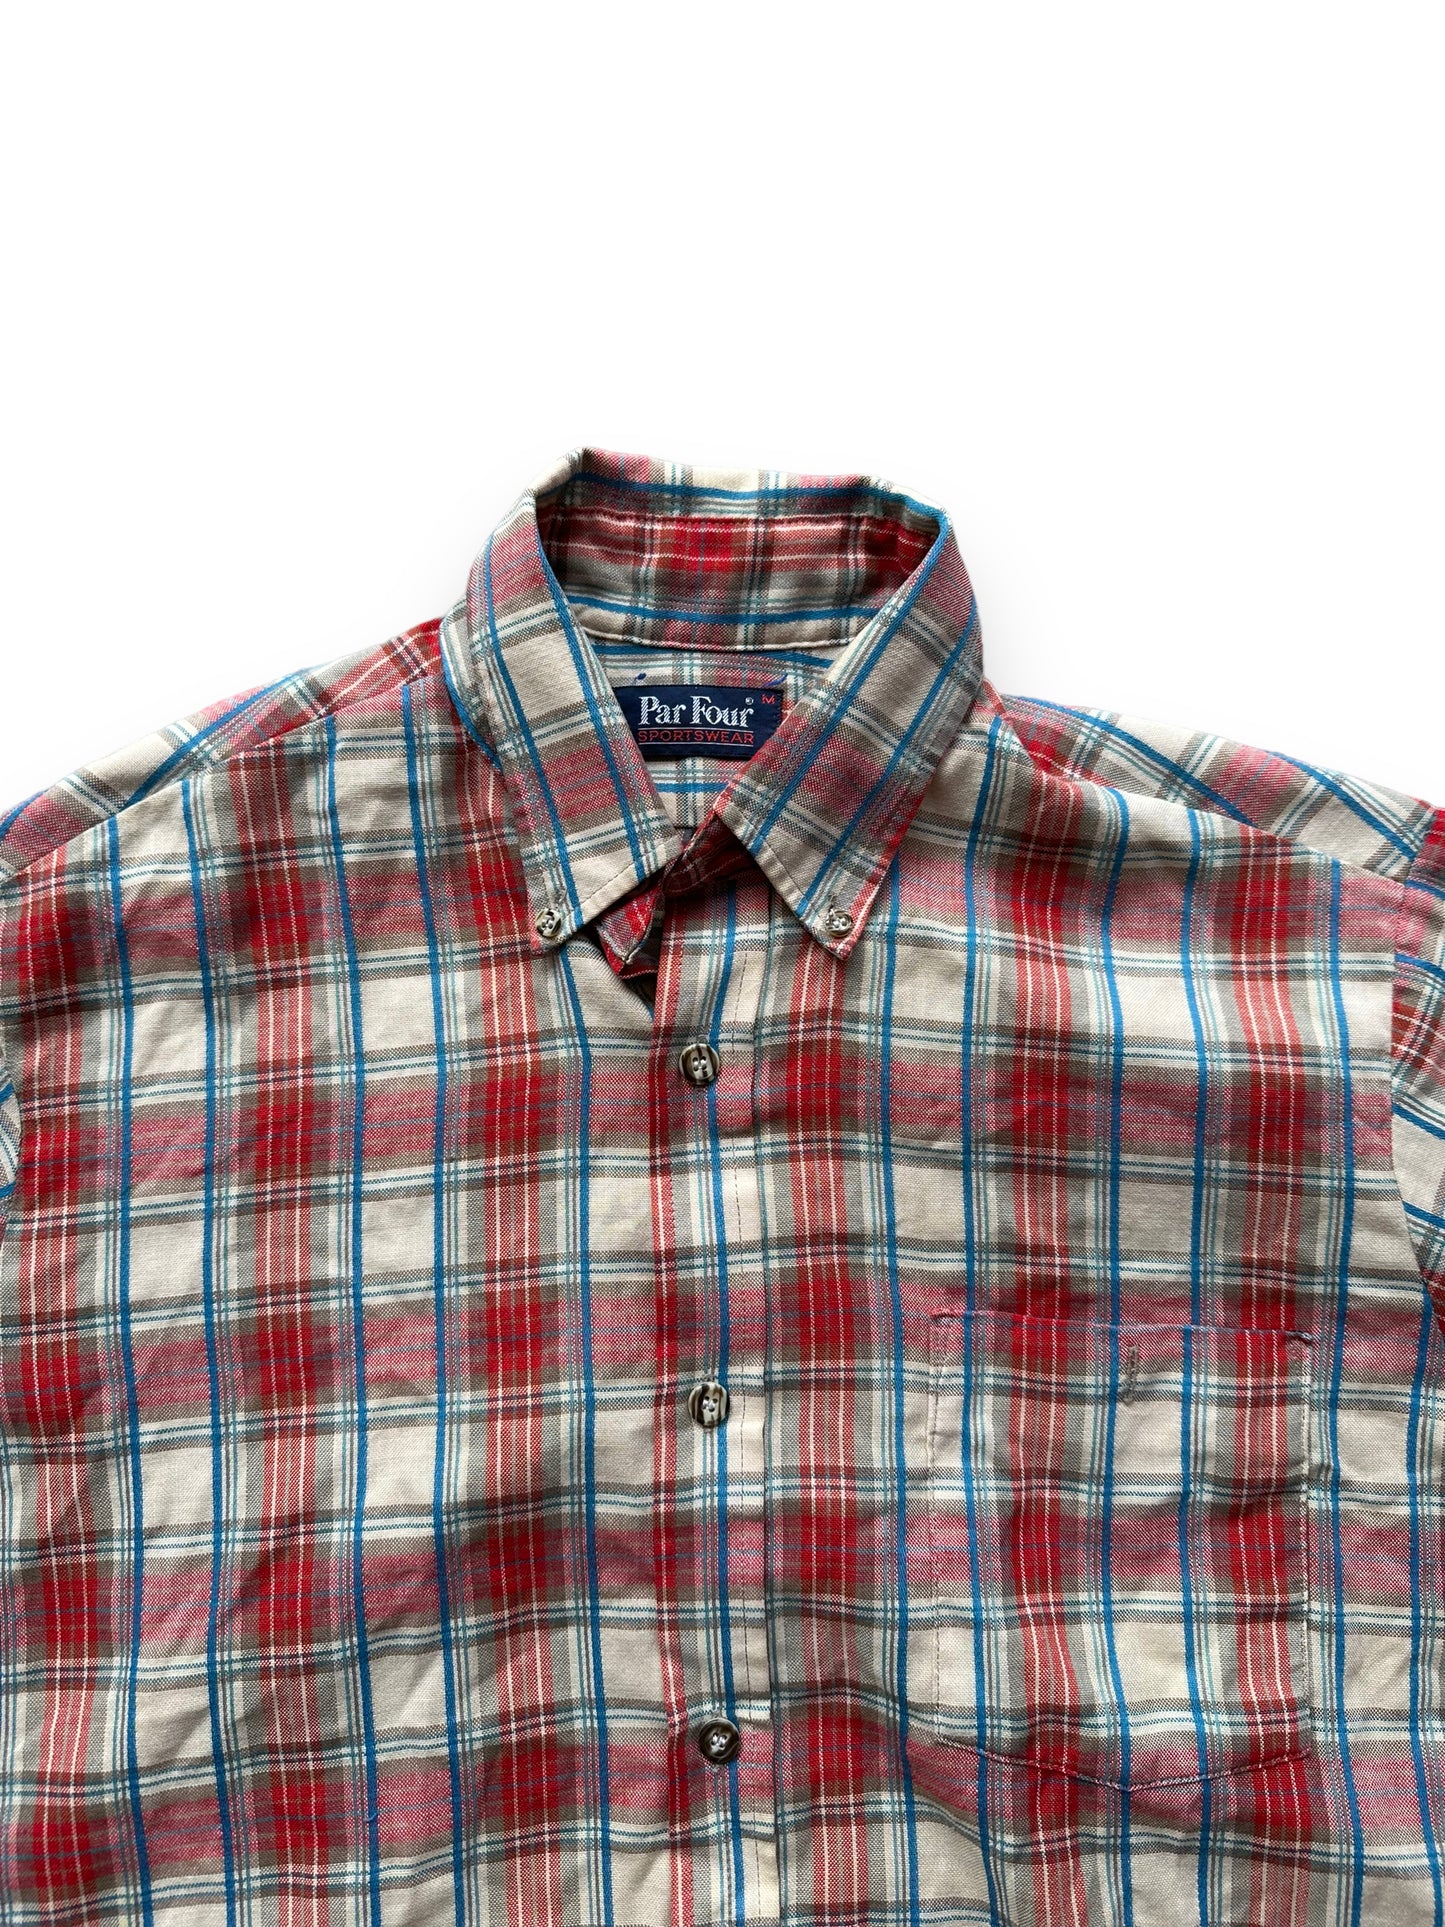 Collar of Vintage Plaid Par Four Sportswear Button Up Shirt SZ M | Vintage Cotton Flannel Seattle | Barn Owl Vintage Seattle